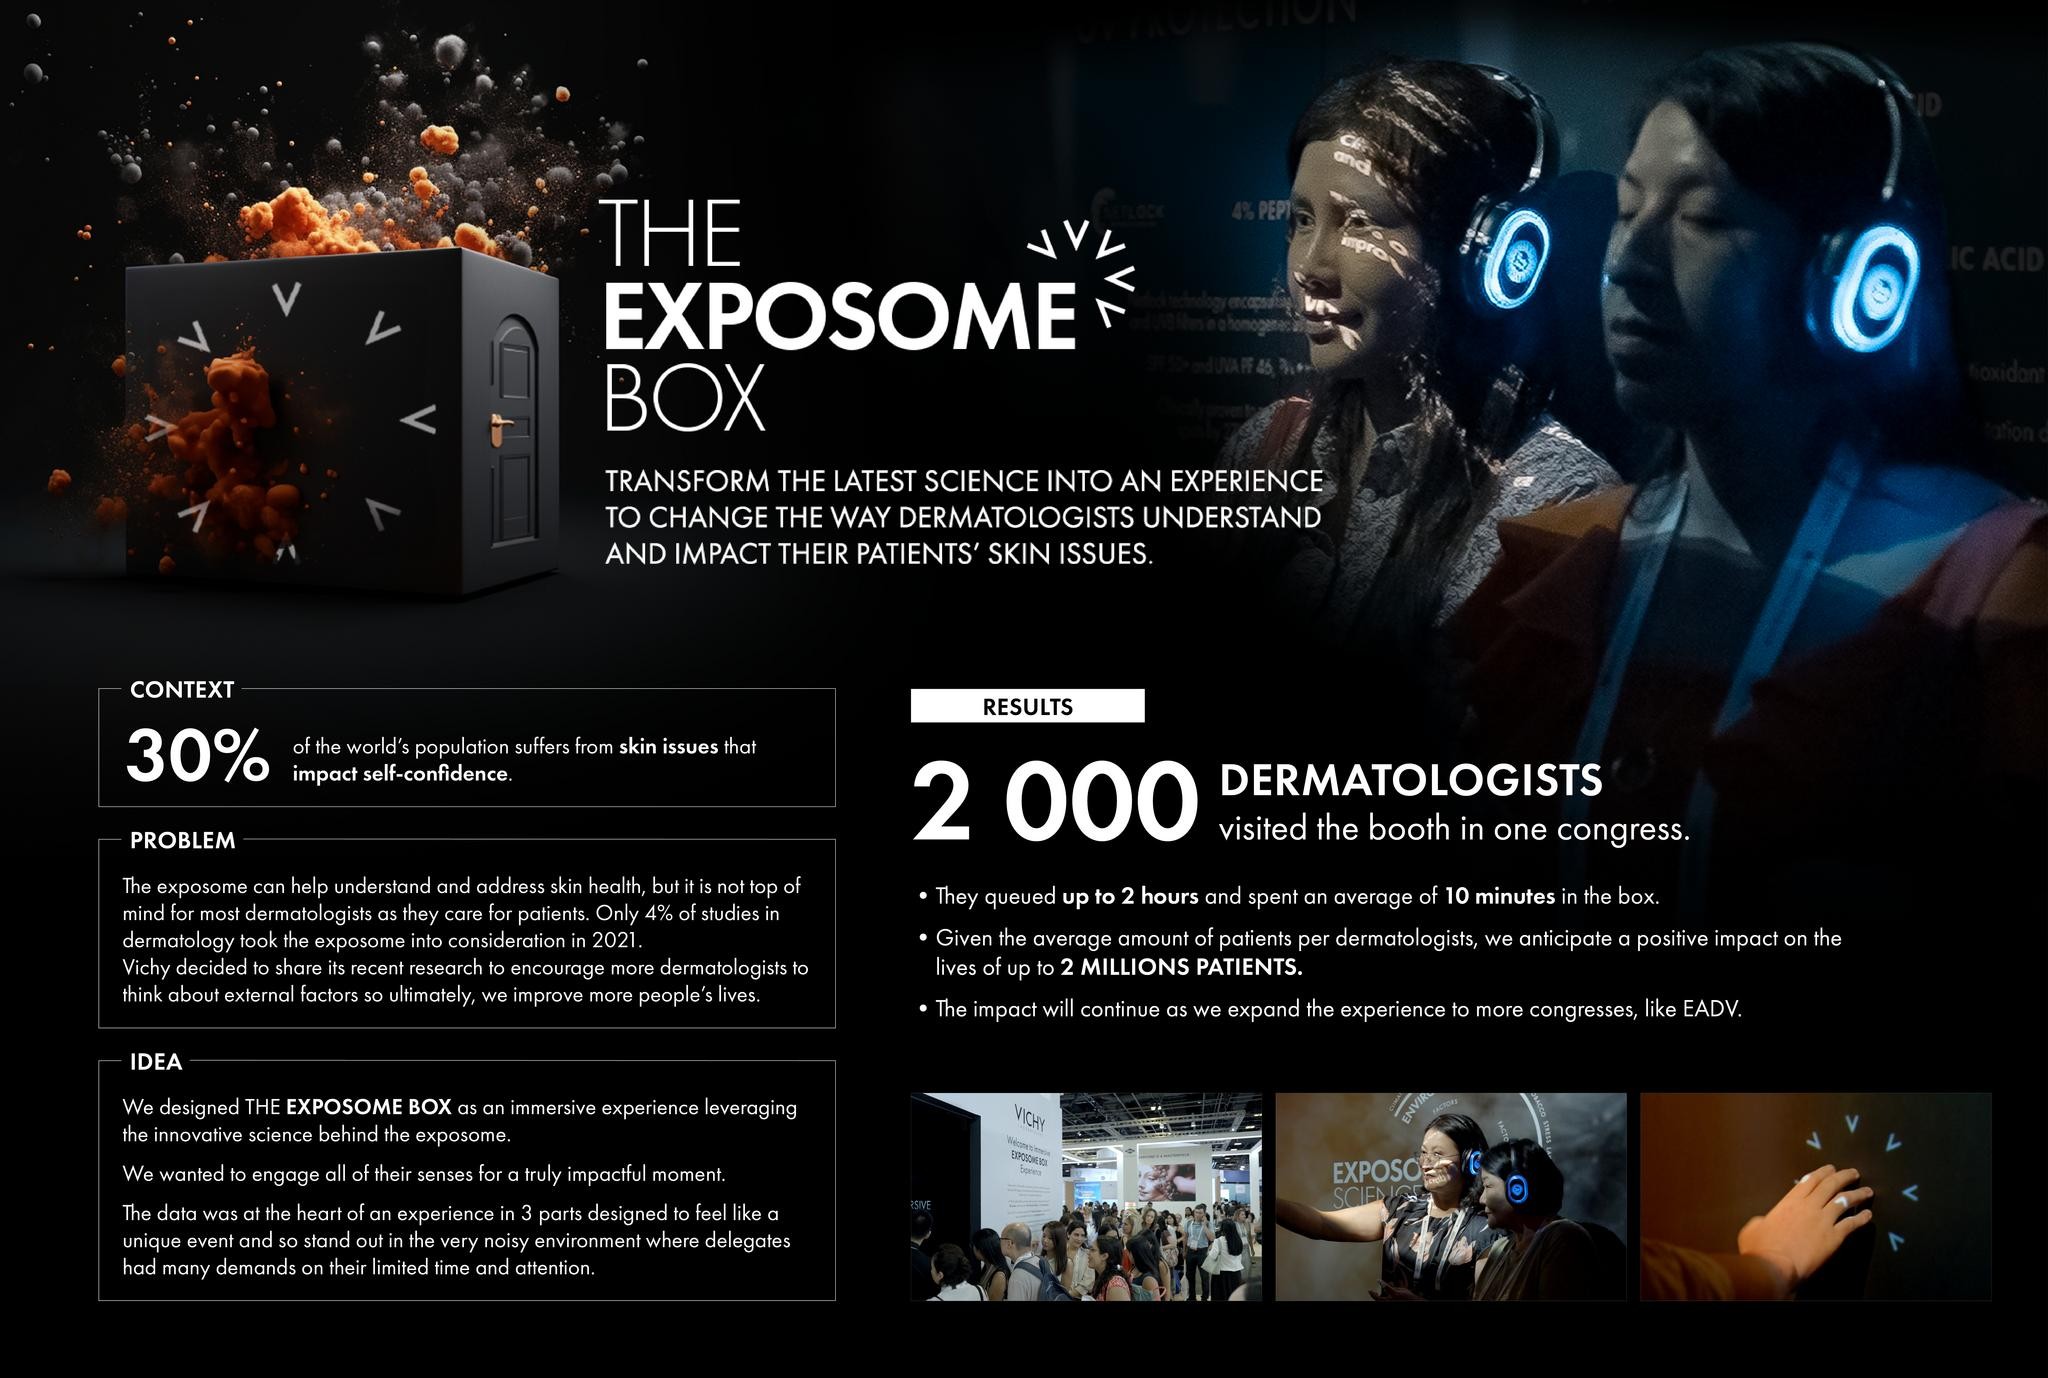 THE EXPOSOME BOX